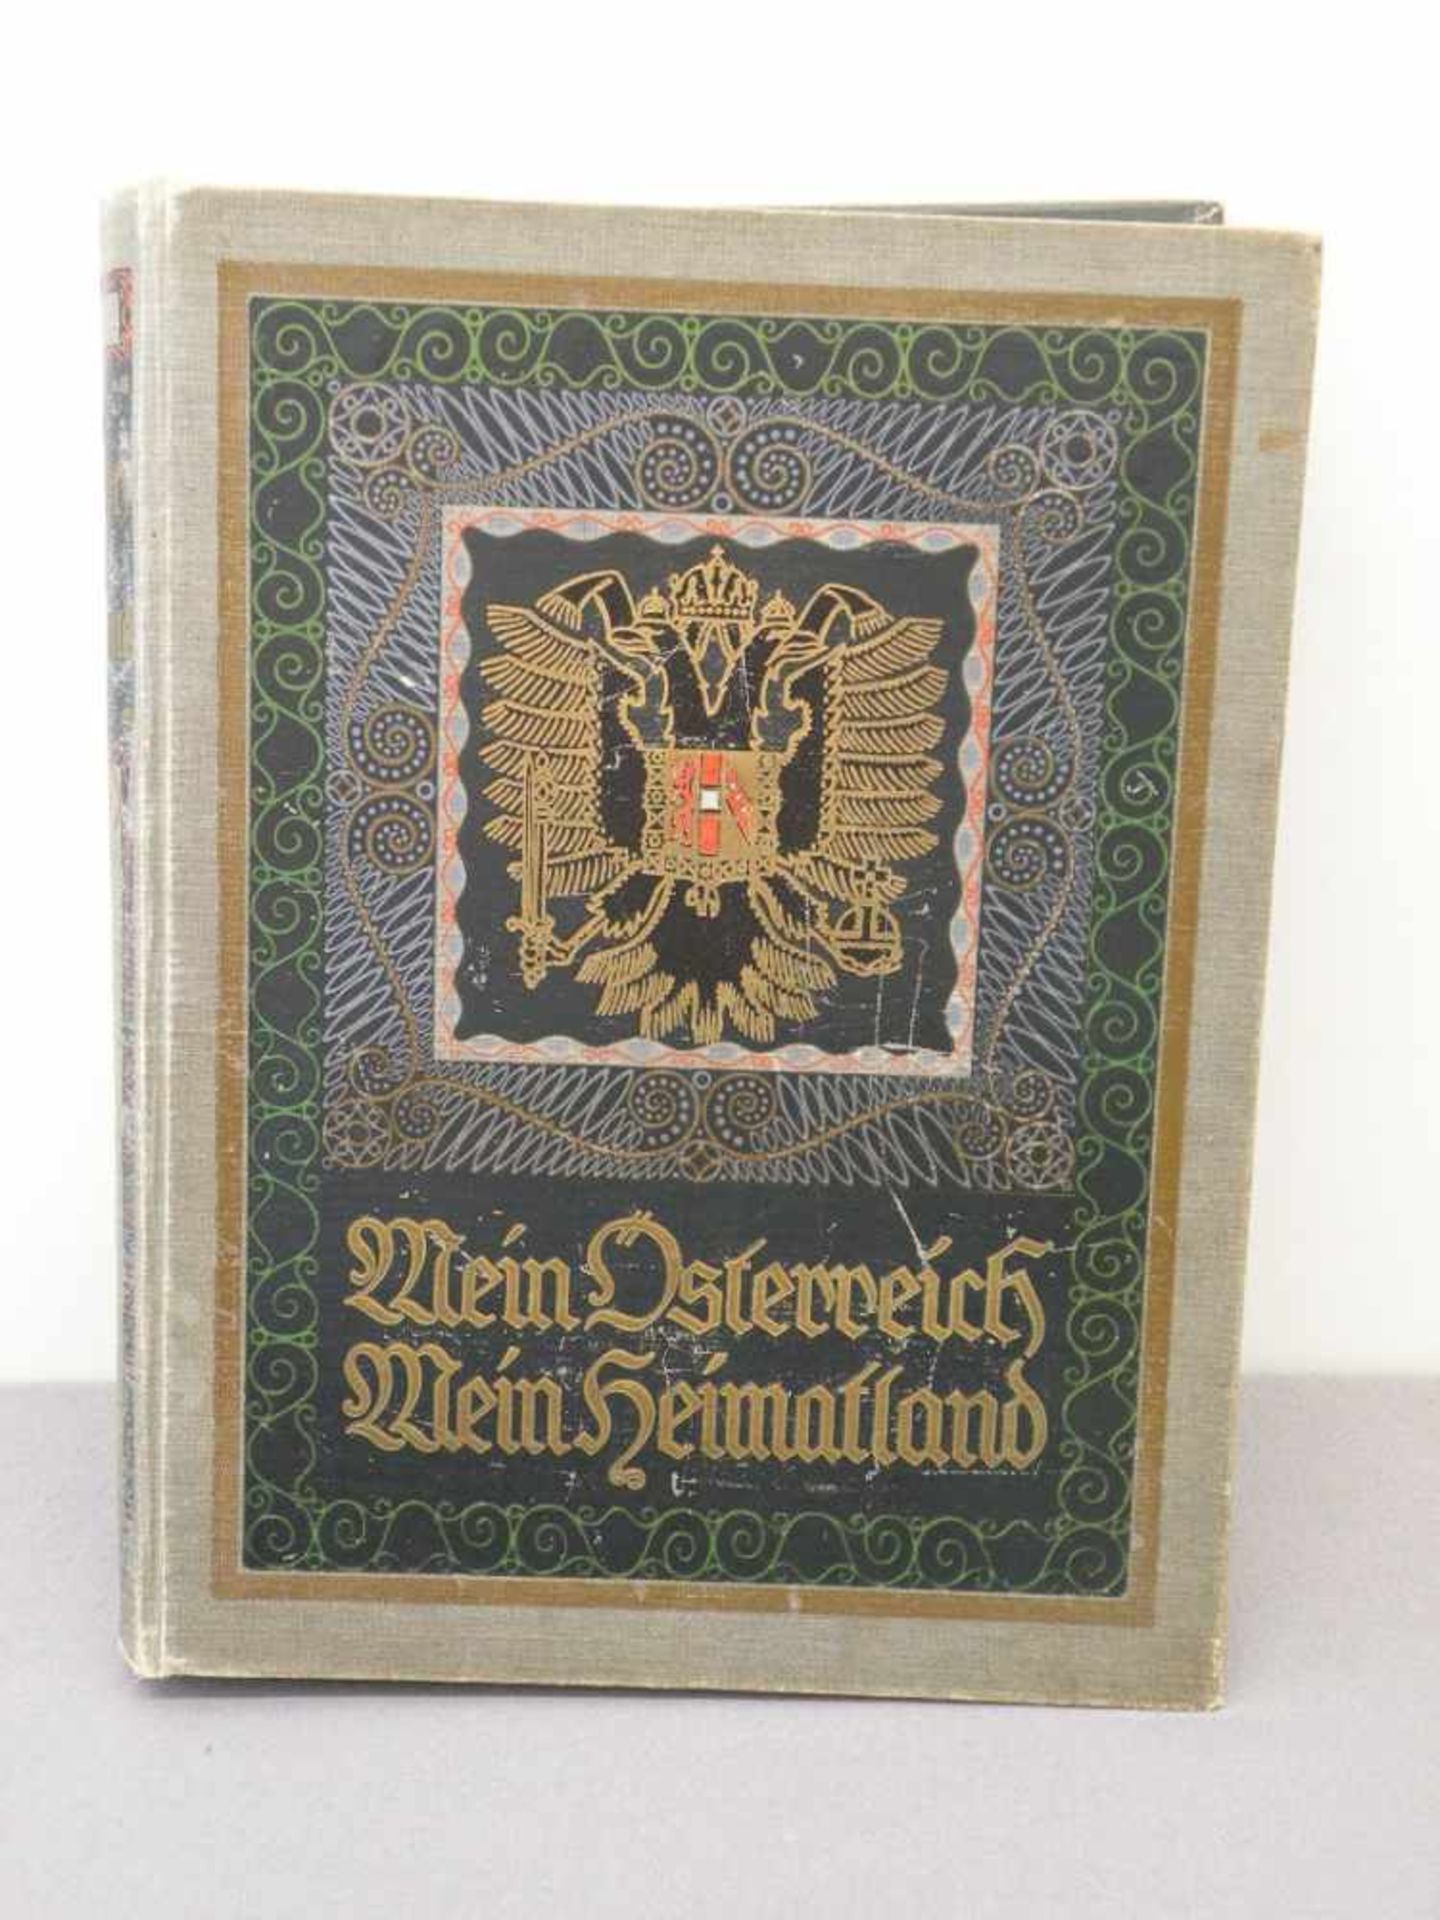 Buch "Mein Österreich, mein Heimatland", Band II, illustriert, Wien 1916, berieben